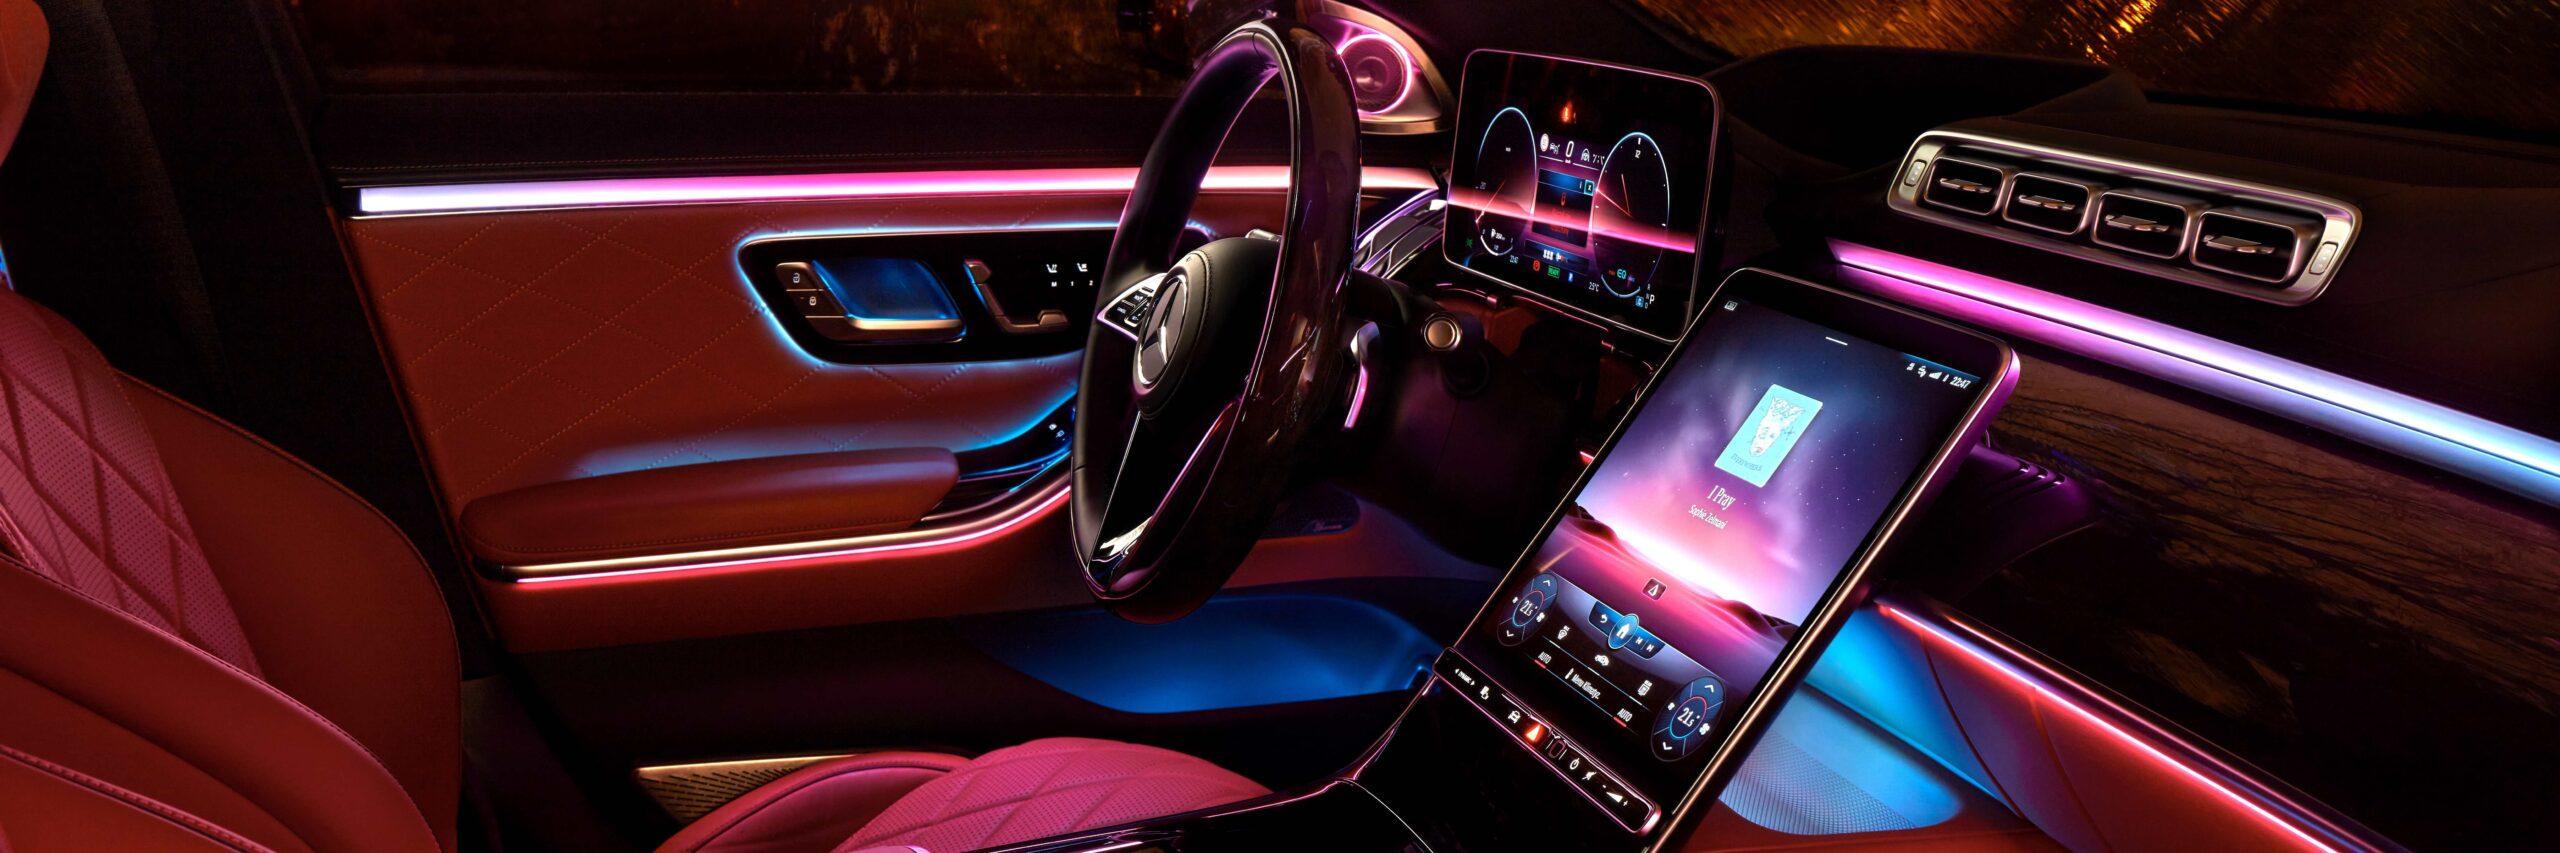 Nachtbeleuchtung im Innenraum der luxuriösen Mercedes S-Klasse mit Echtholz- und Lederausstattung und einem riesigen Multimedia-Bildschirm MBUX. Regnerische Nacht. Symbol „Von der Community überprüft“